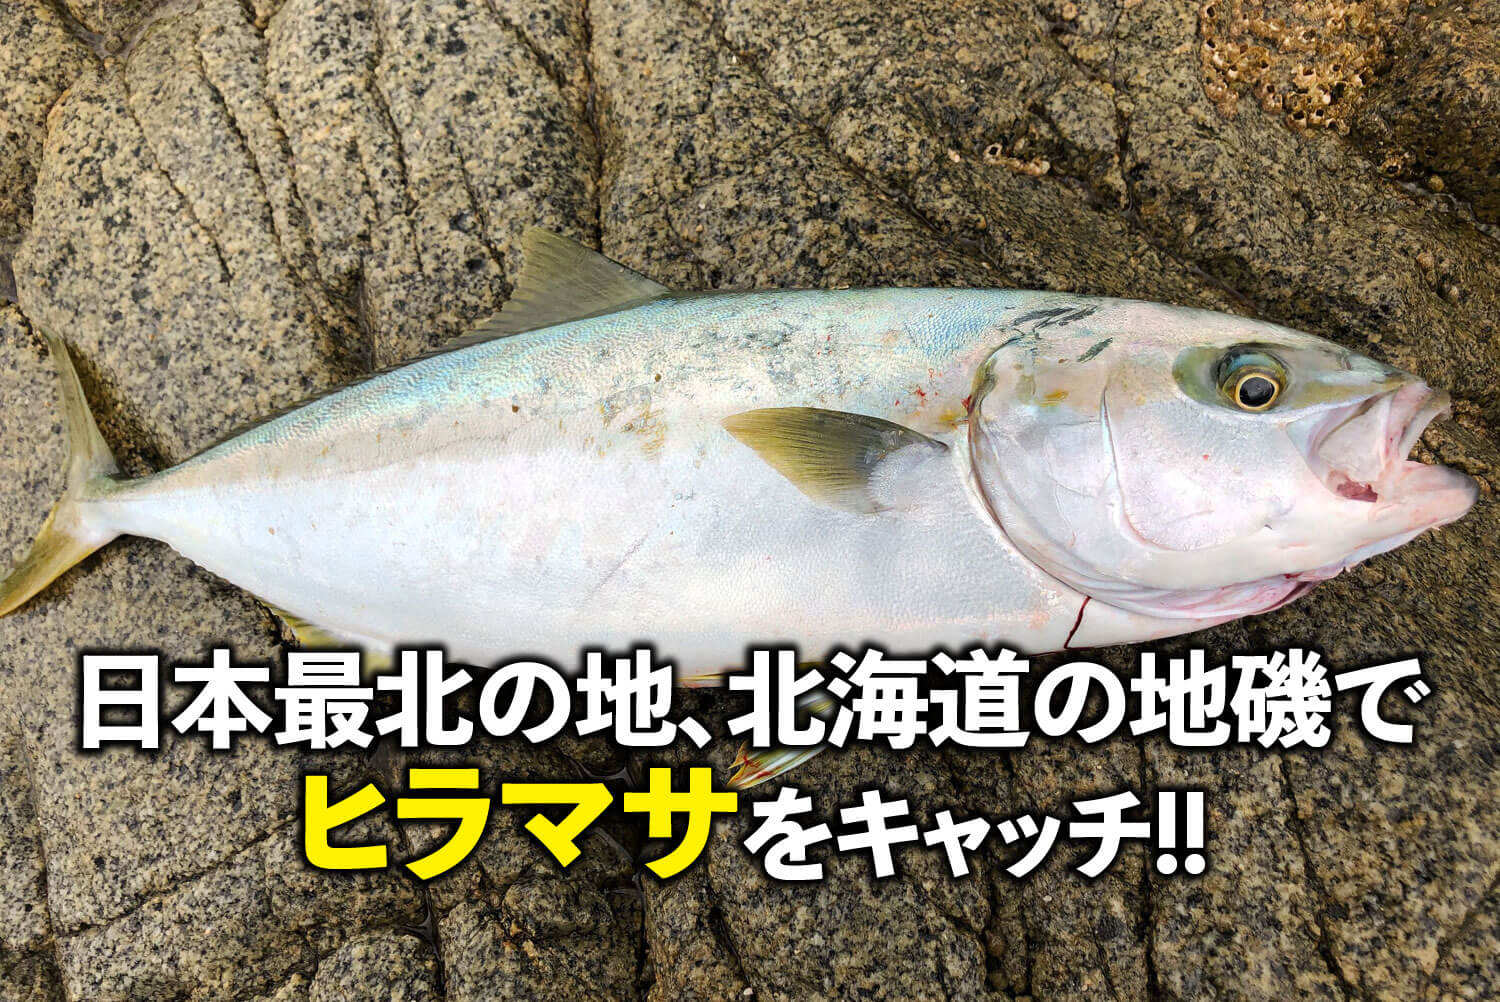 日本最北の地 北海道の地磯でヒラマサをキャッチ Swマガジンweb 海のルアーマンのための総合情報メディア